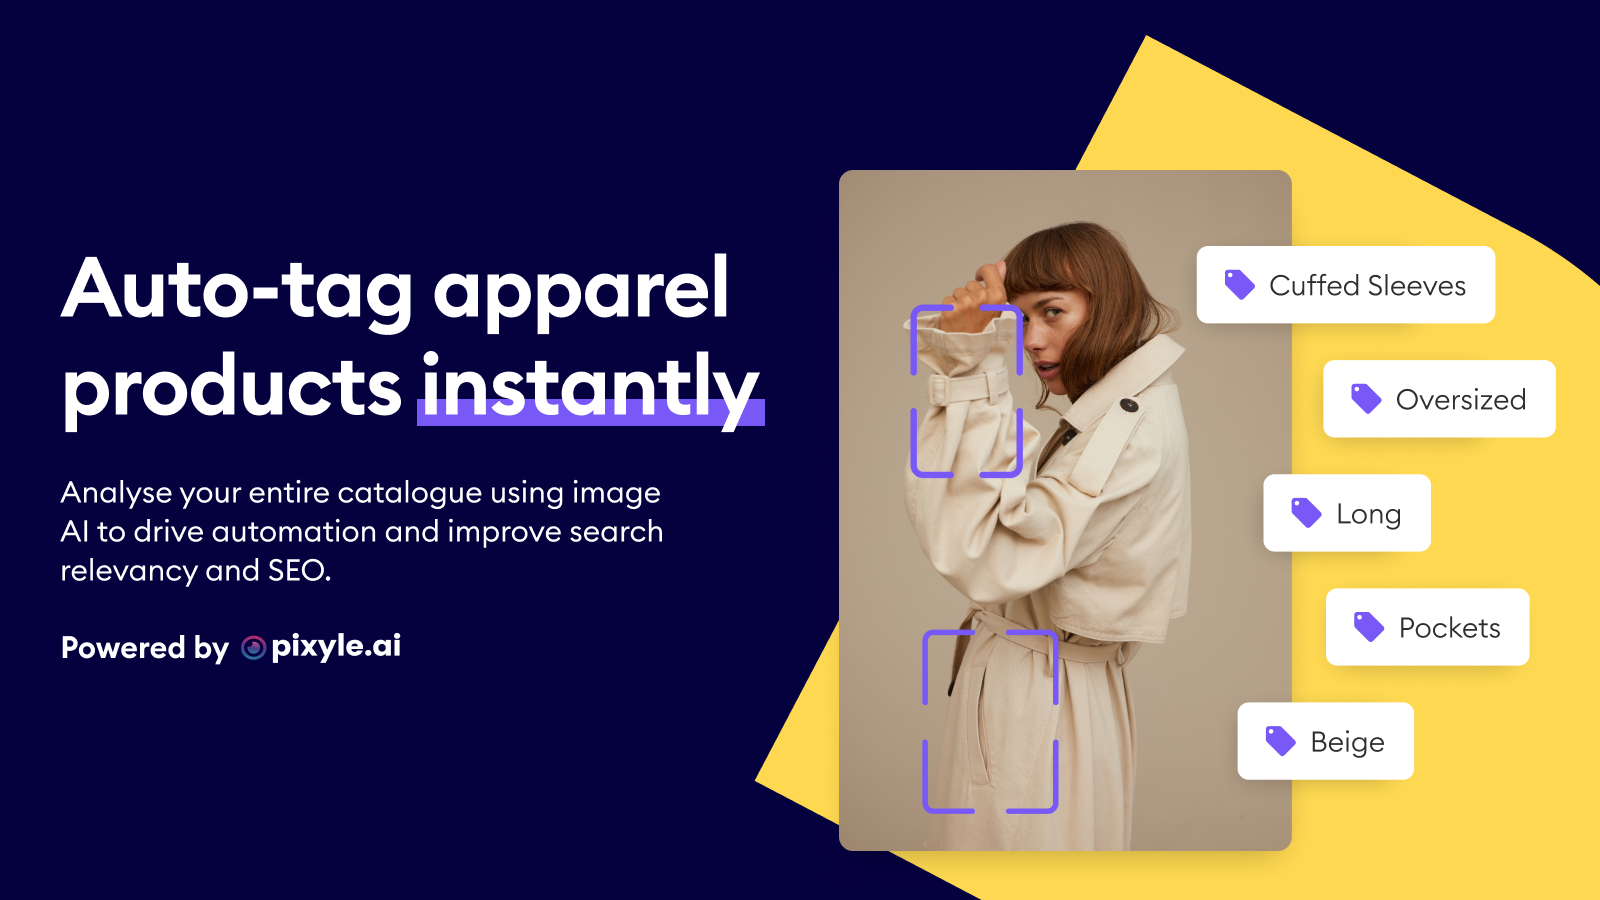 Etiqueta automáticamente los productos de vestir al instante con Reactify Image AI